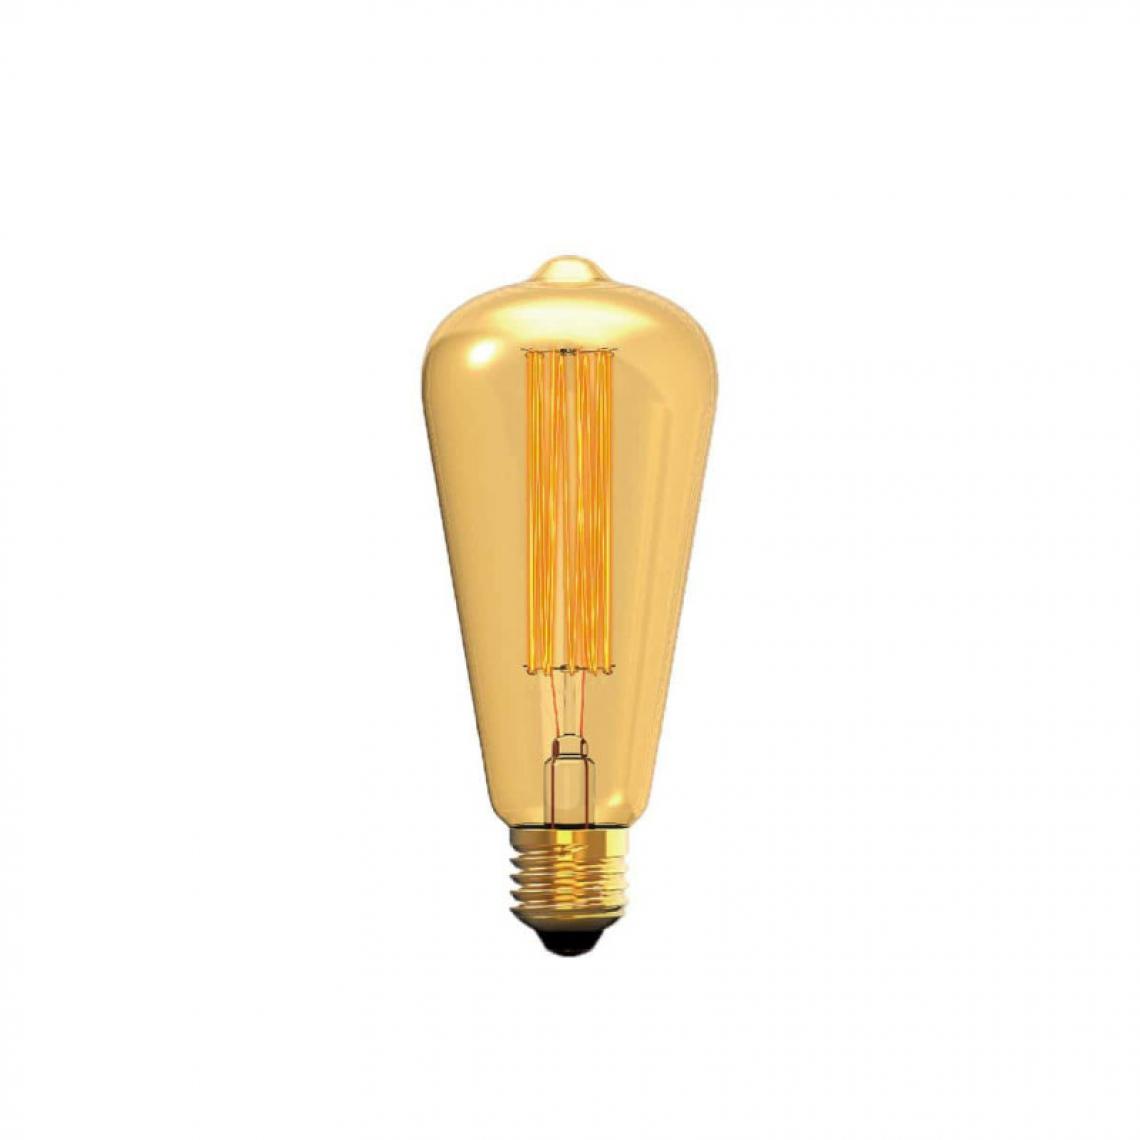 Xxcell - Ampoule Filament Incandescent XXCELL Poire Ambré Vintage - E27 - 40W - Ampoules LED